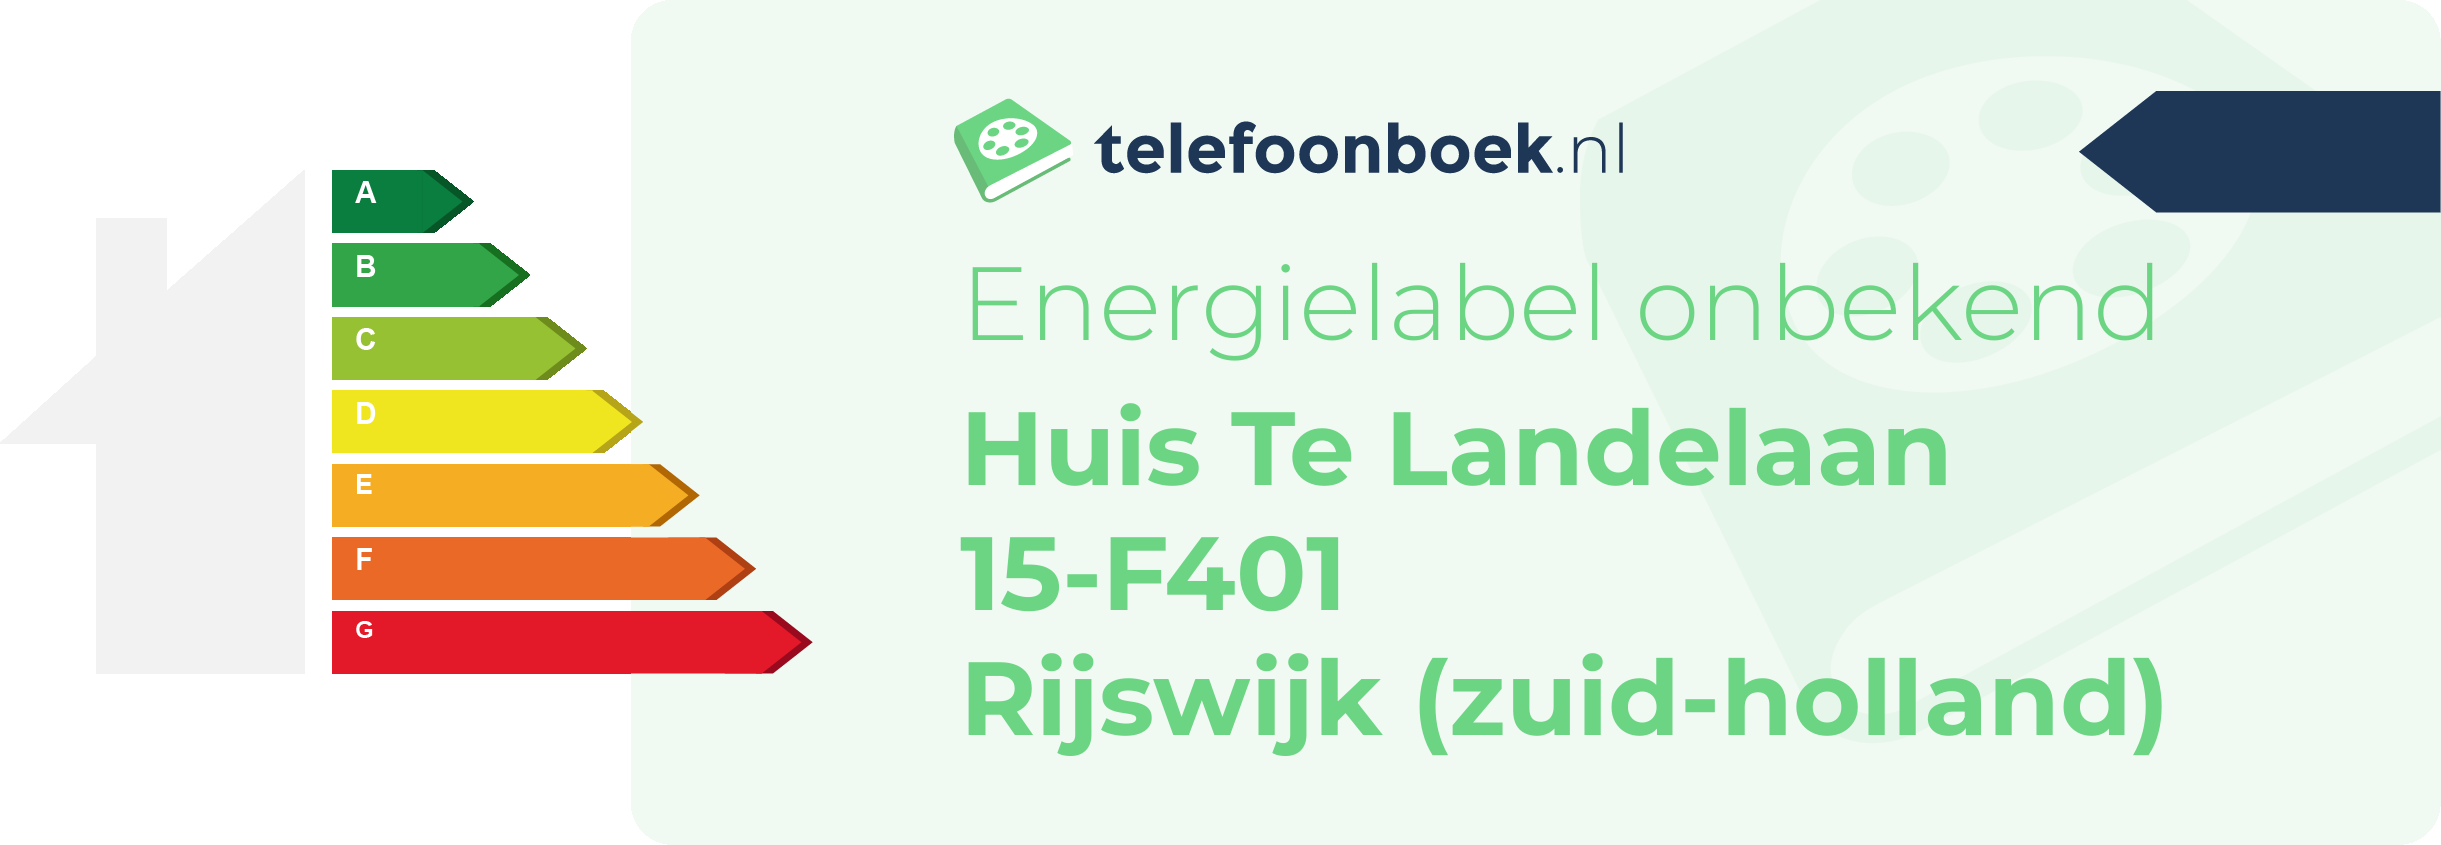 Energielabel Huis Te Landelaan 15-F401 Rijswijk (Zuid-Holland)